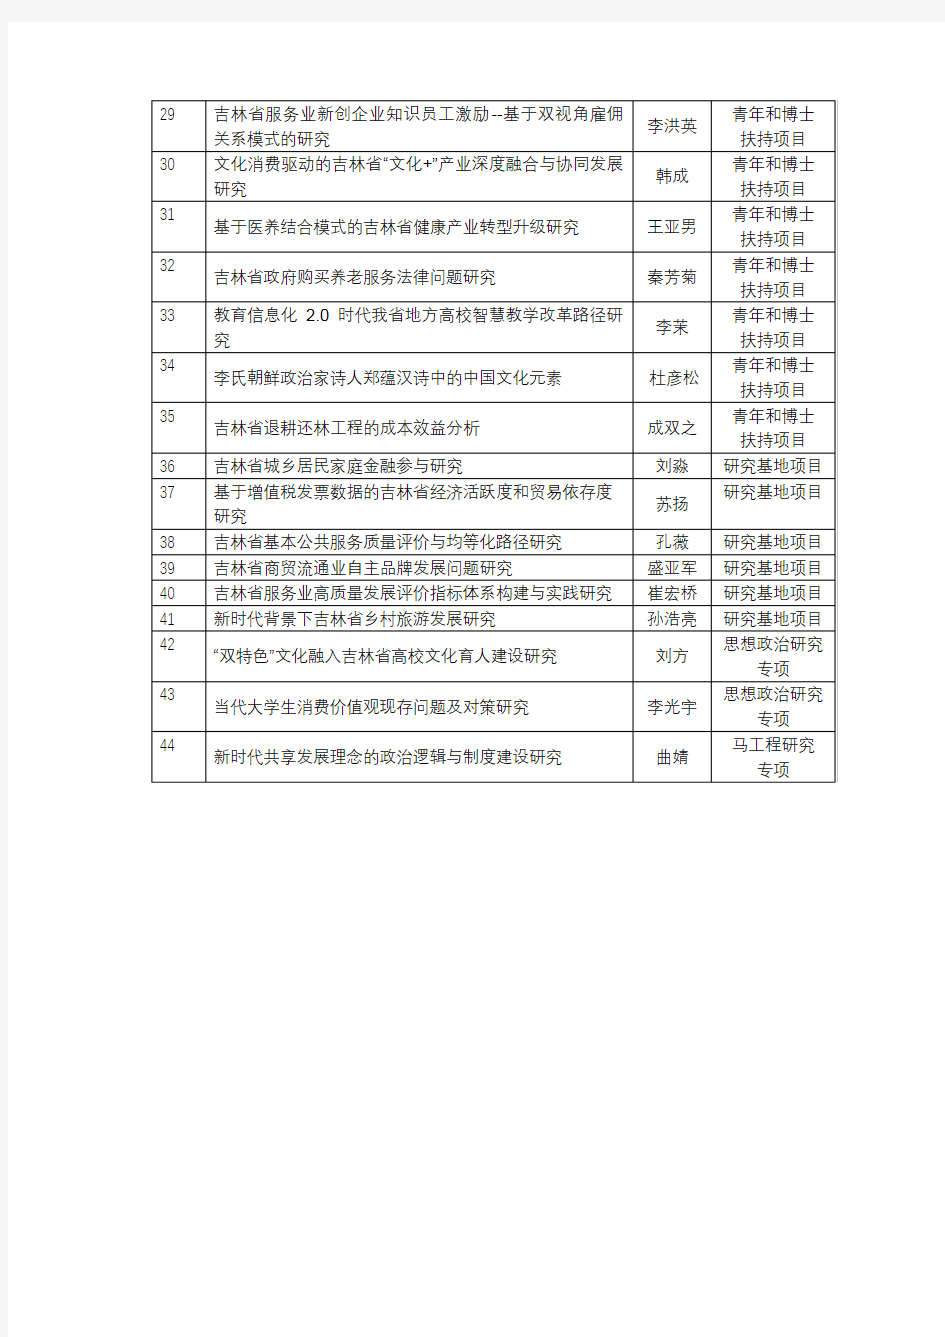 吉林财经大学2019年度省社科项目立项公示名单【模板】